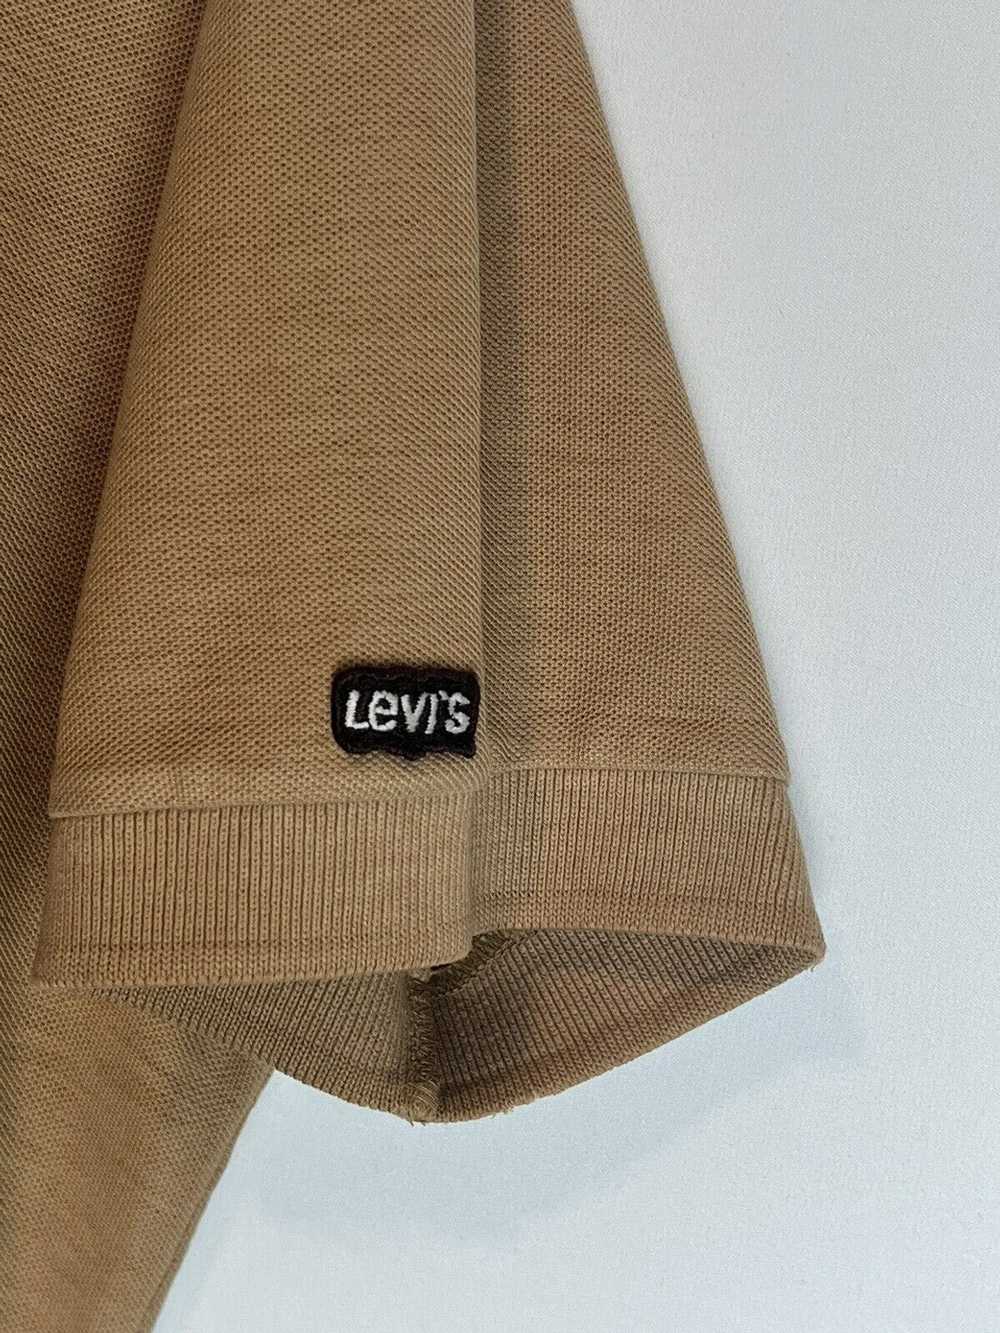 Levi's Levi’s Vintage Brown Polo T-Shirt - image 4